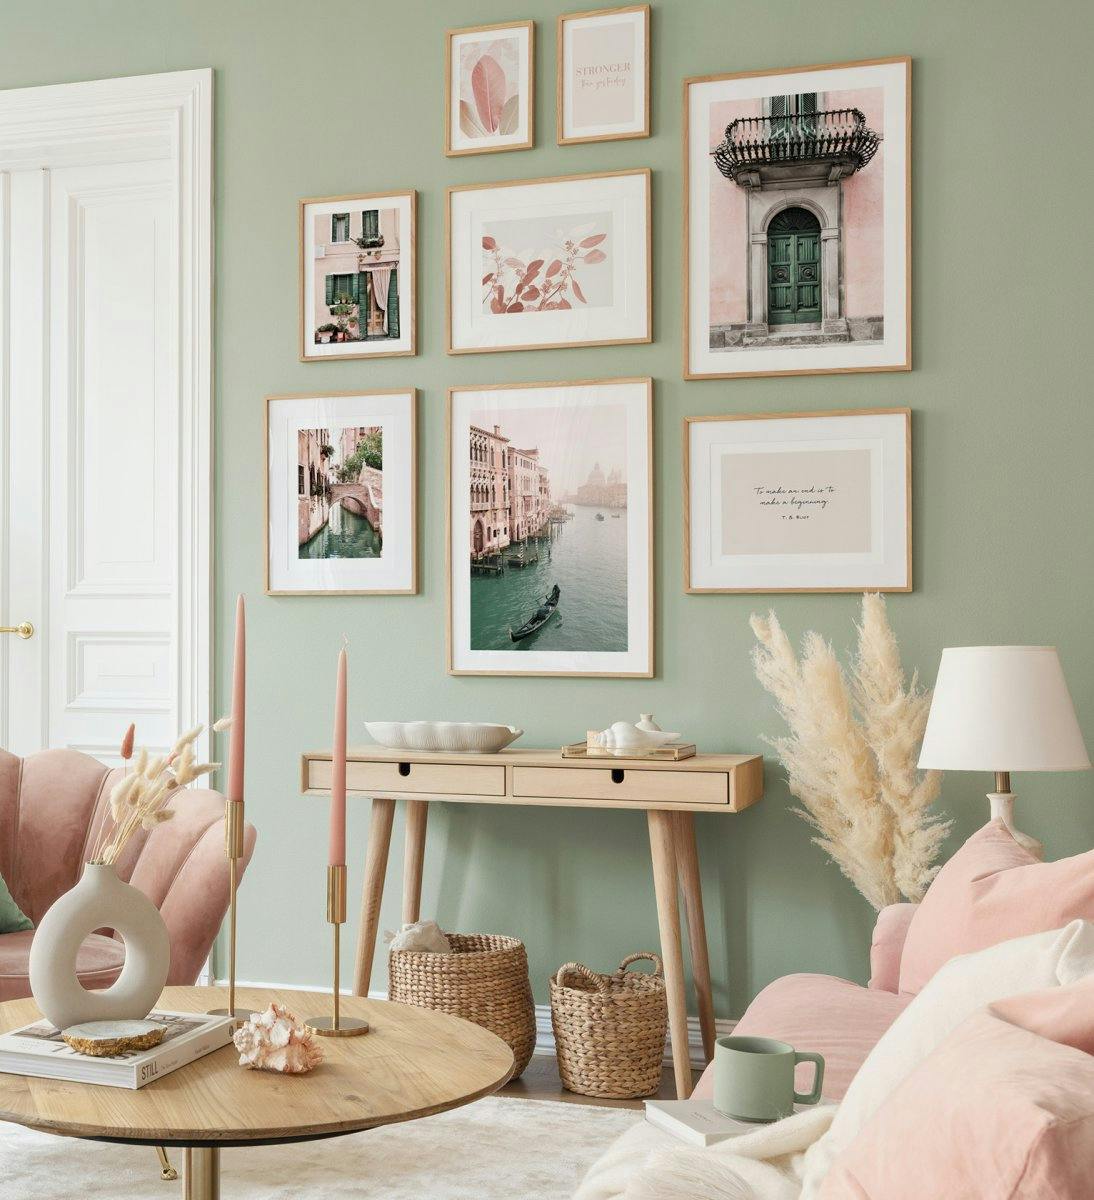 Fotografie v pastelových barvách pro hravou atmosféru v obývacím pokoji